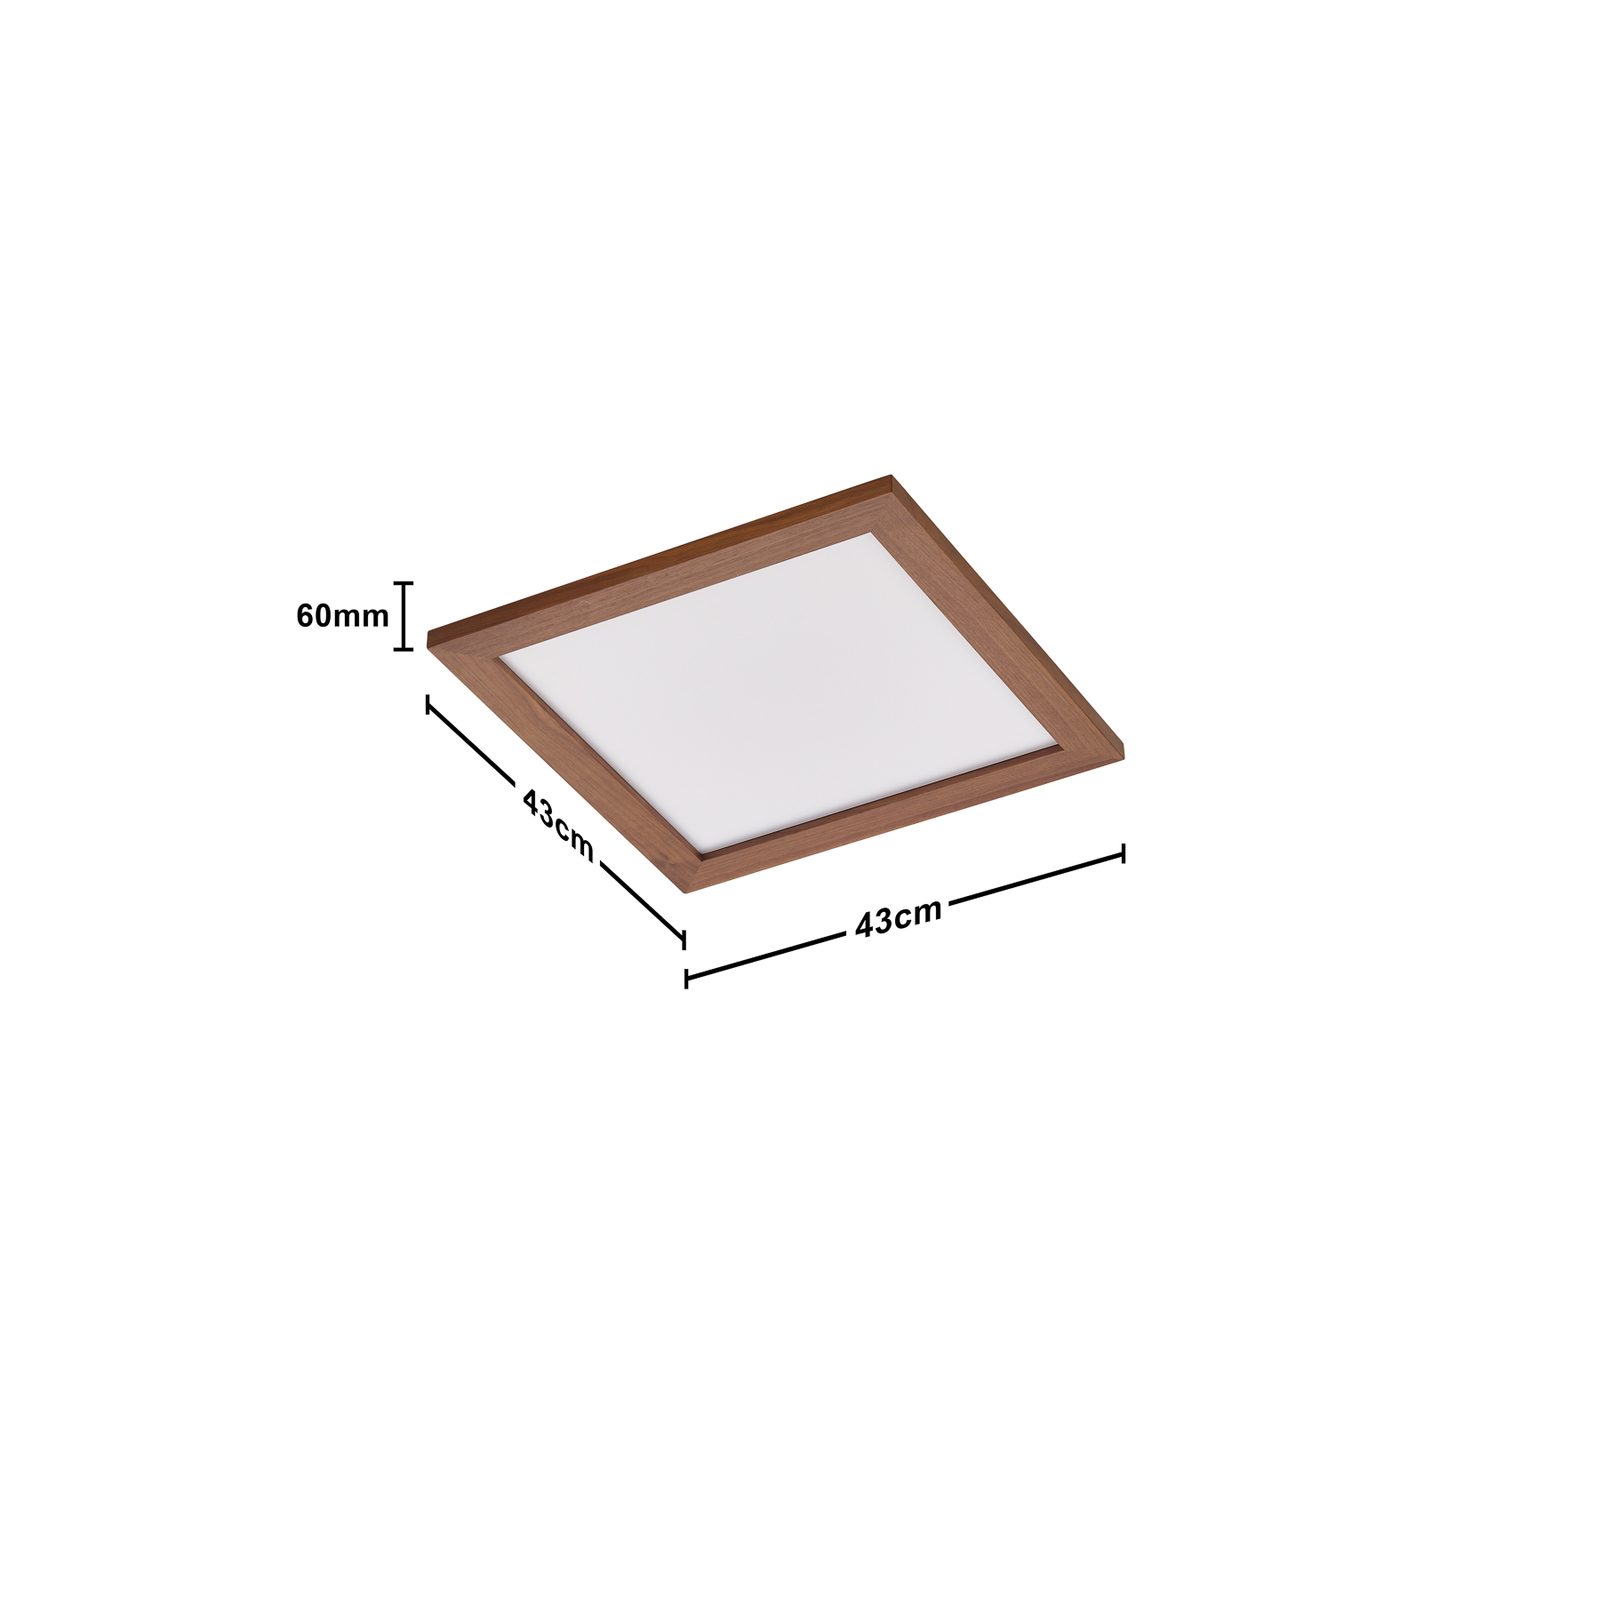 Quitani Aurinor LED-panel, valnöt, 45 cm